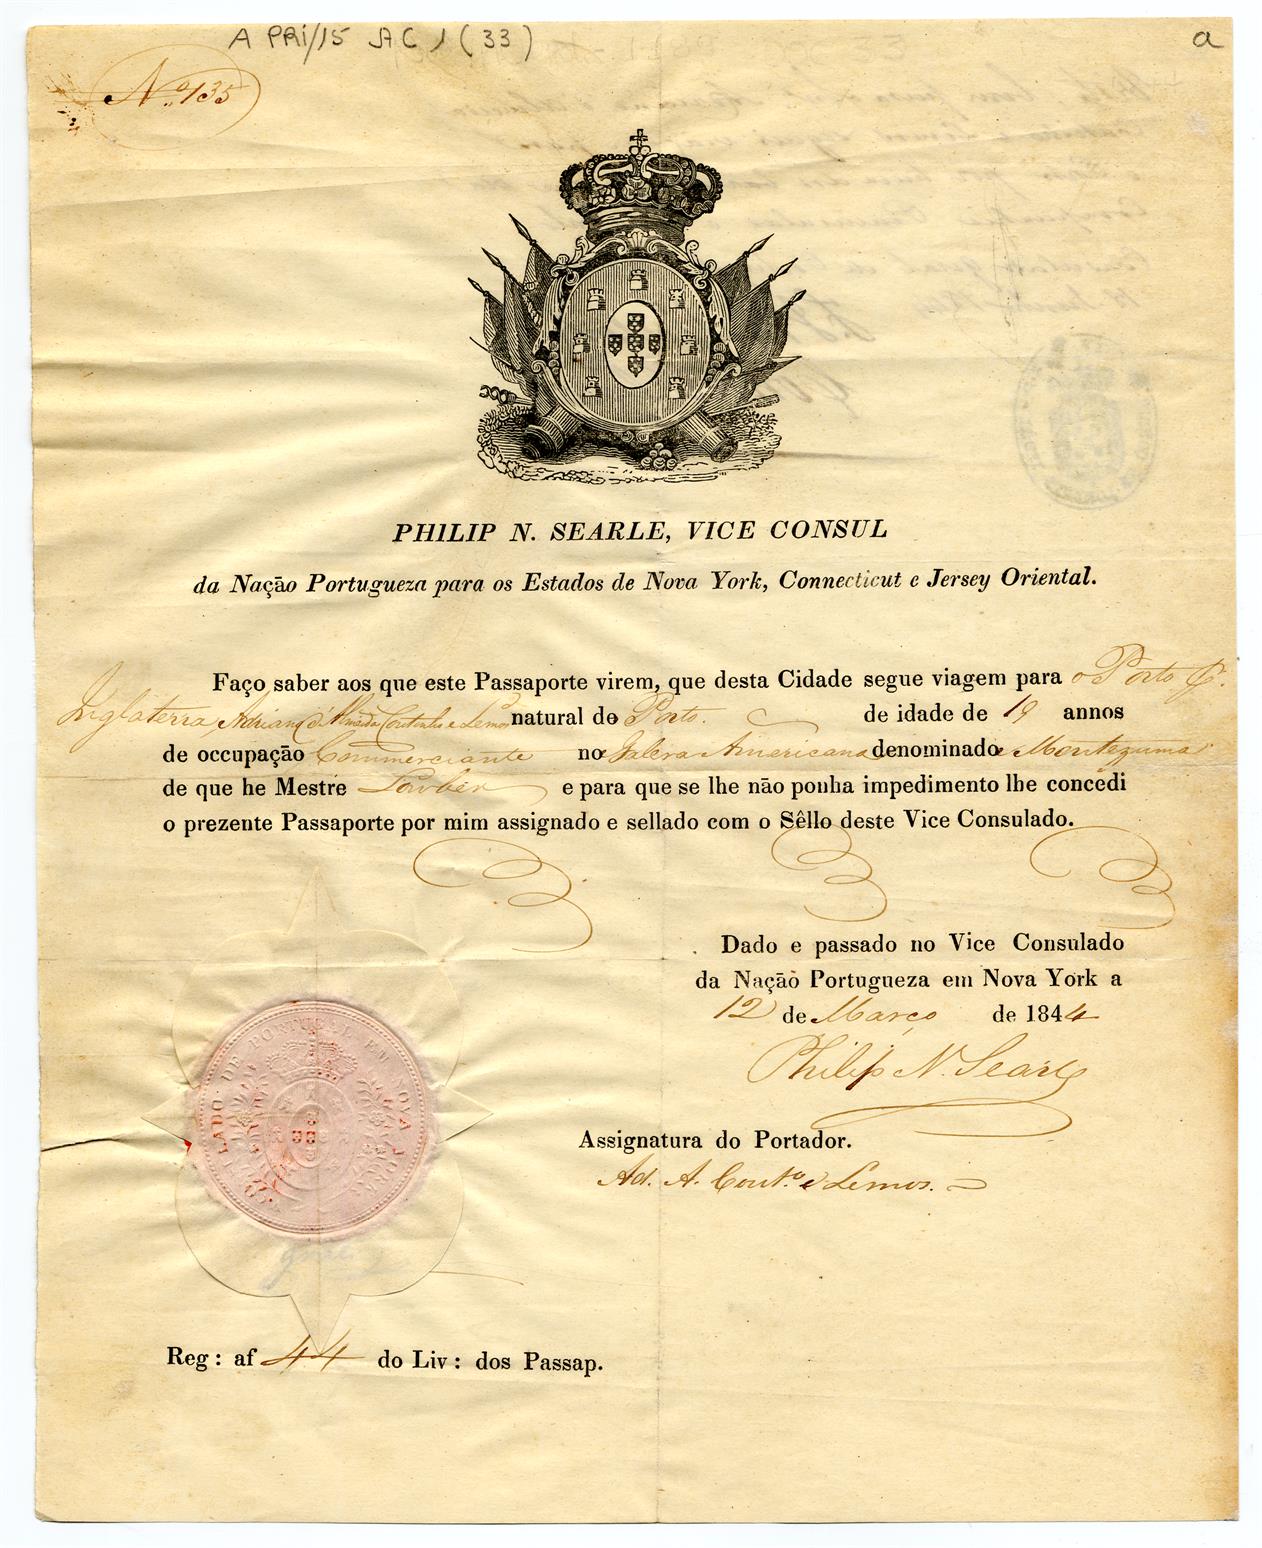 Passaporte de Adriano de Almeida Coutinho e Lemos